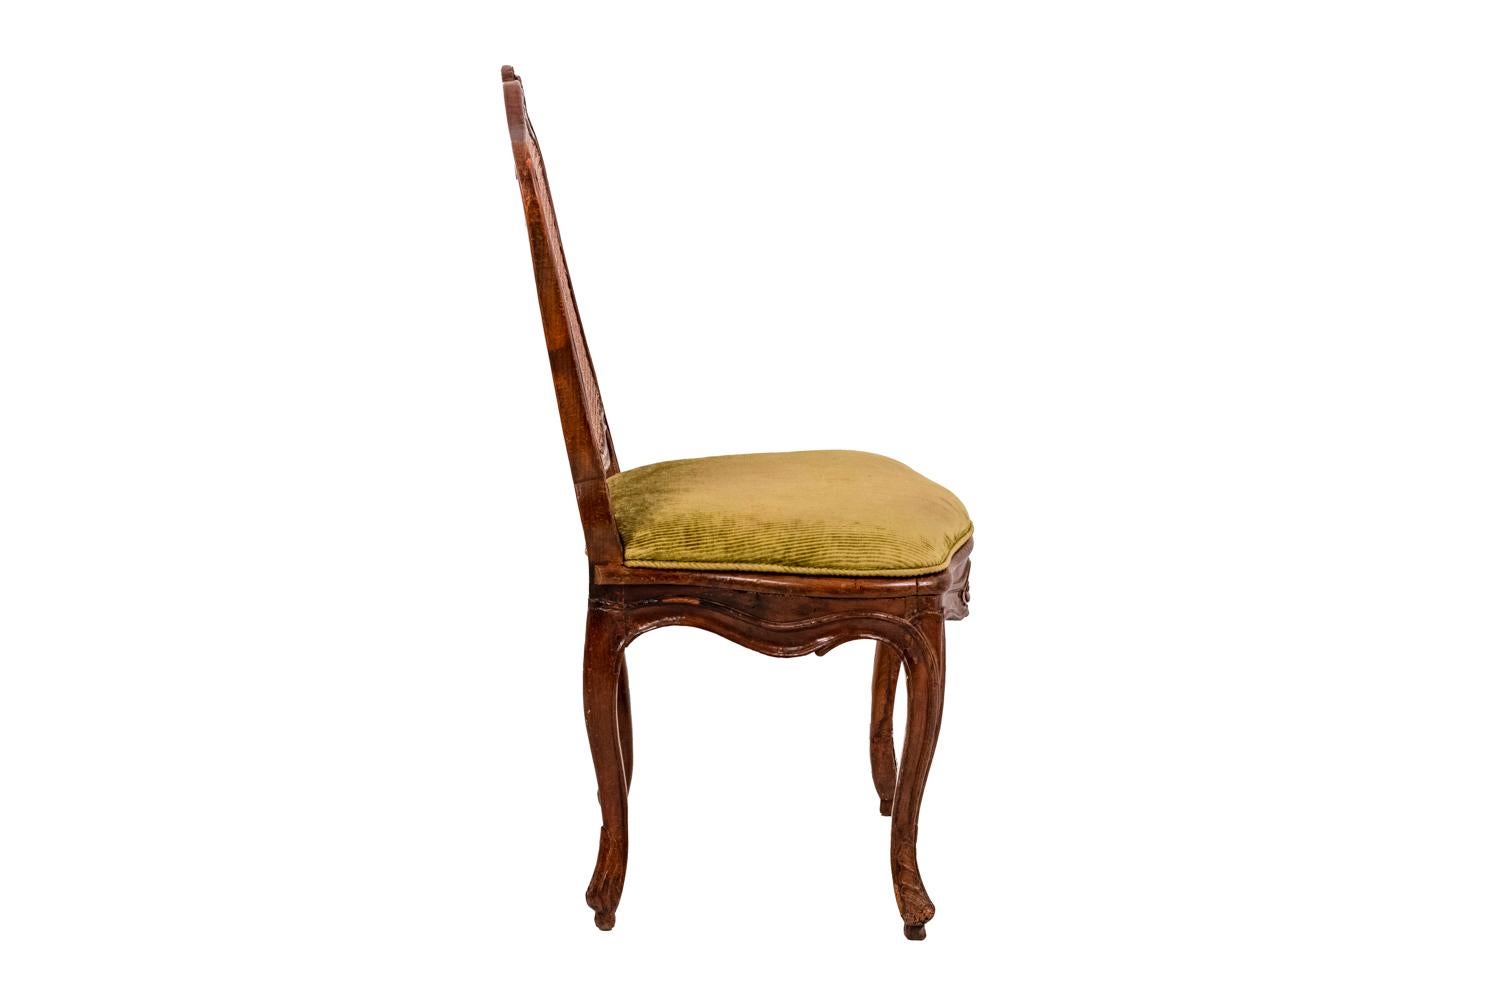 European Cane Chair in Beech, Louis XV Period